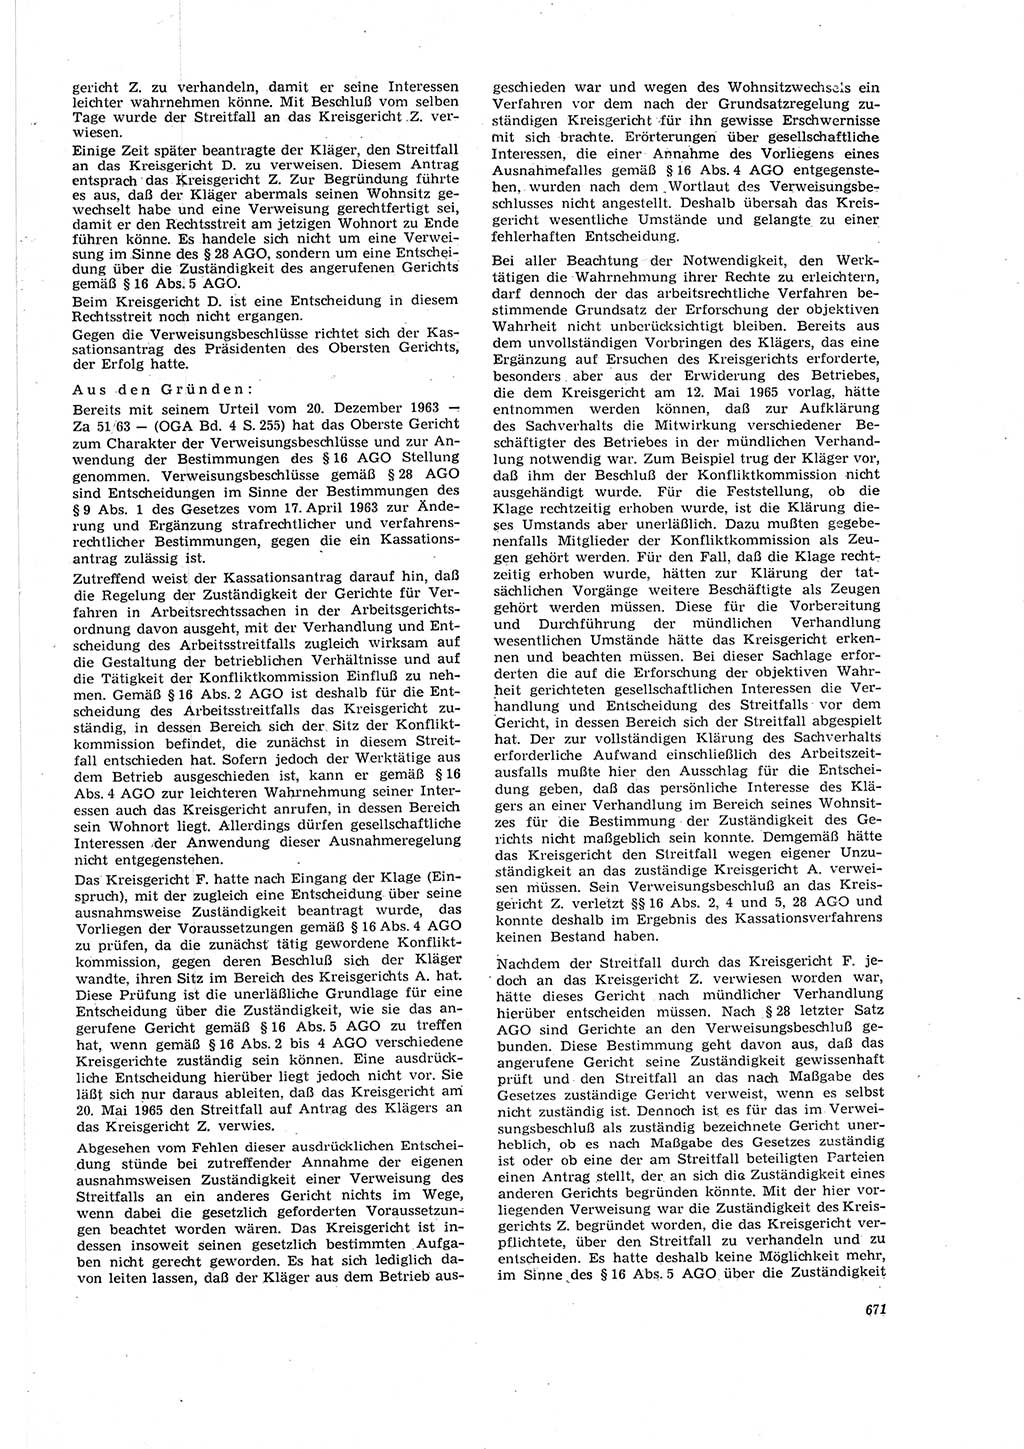 Neue Justiz (NJ), Zeitschrift für Recht und Rechtswissenschaft [Deutsche Demokratische Republik (DDR)], 20. Jahrgang 1966, Seite 671 (NJ DDR 1966, S. 671)